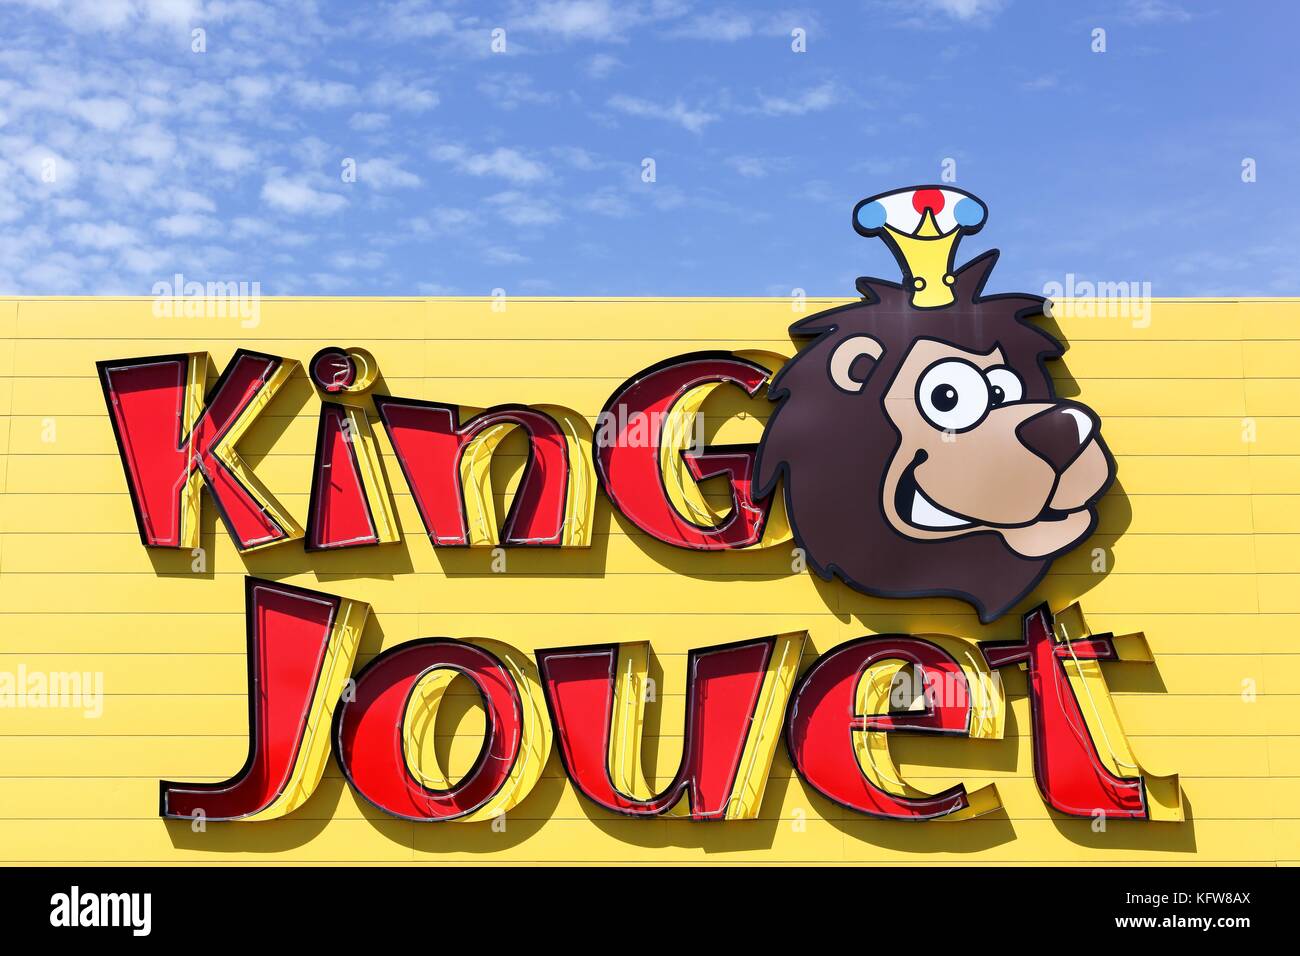 Villefranche, France - 11 juin 2017 : king jouet logo sur un mur. king jouet  est est un jouet français et des juvéniles produits détaillants Photo Stock  - Alamy